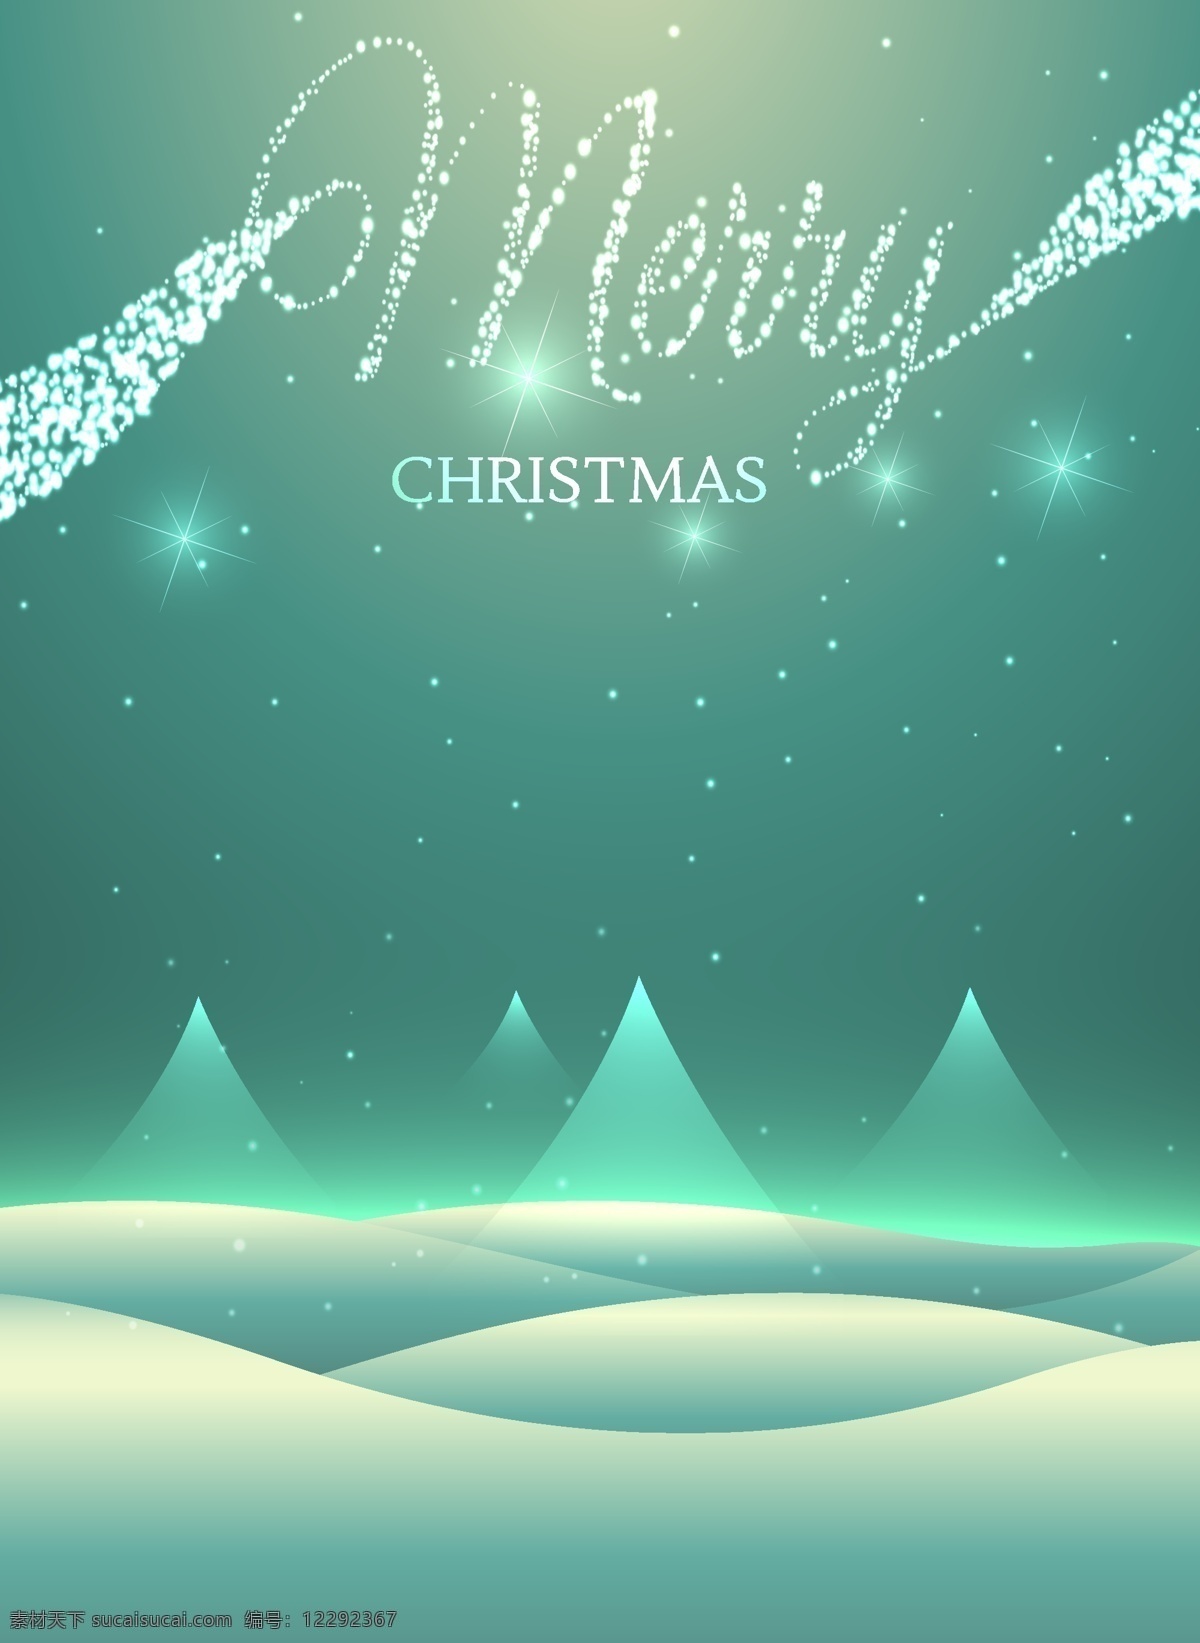 欧式 圣诞节 字体 海报 矢量 背景 梦幻星光 星空 雪地 波浪 炫光 雪花 下雪 雪景 梦幻 创意字体 背景素材